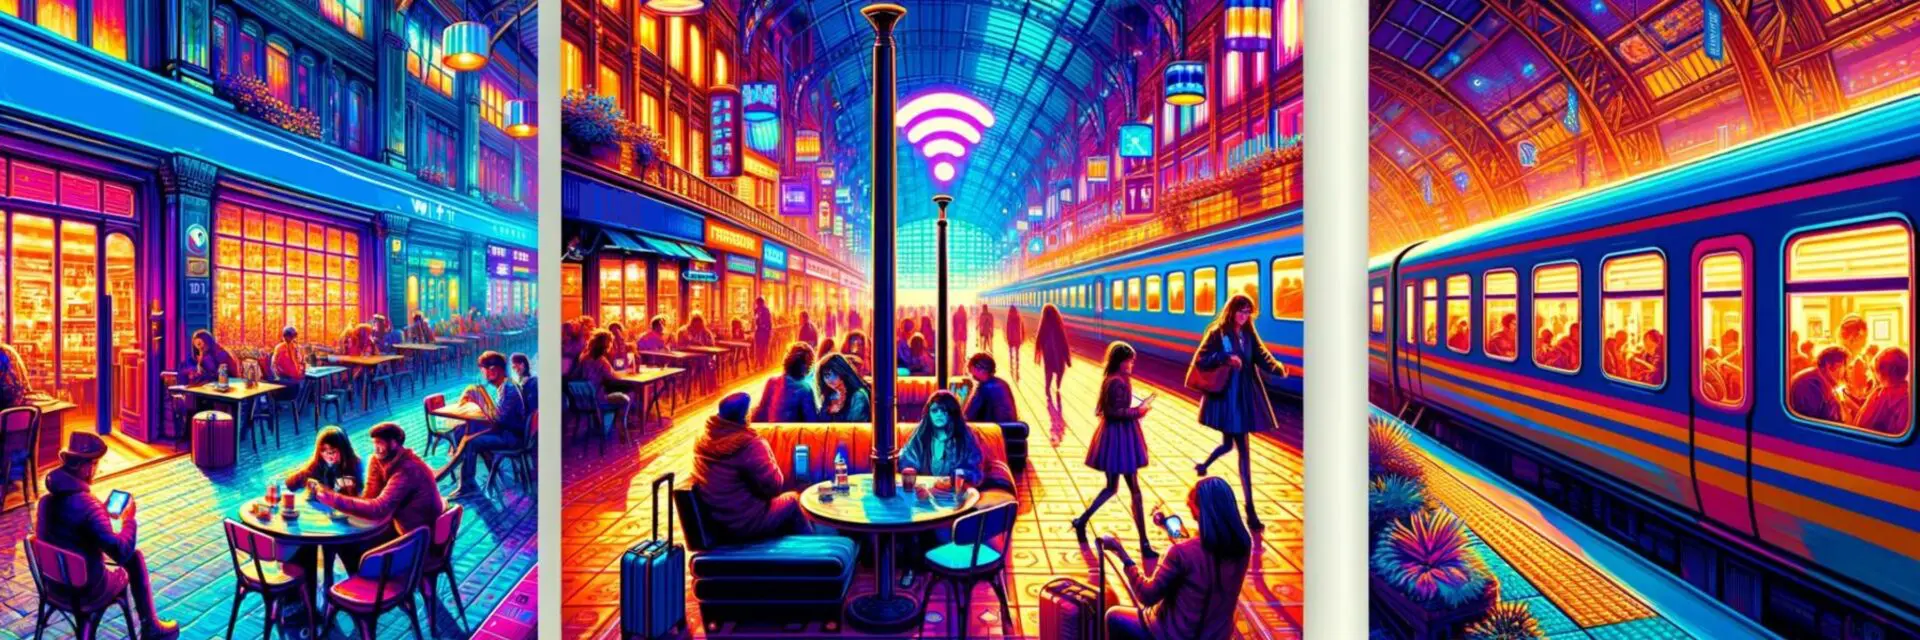 Symbolik, die öffentliche Räume (Café, Zug, Flughafen) darstellt, mit Wi-Fi-Symbolen, die die Verfügbarkeit von öffentlichem WLAN anzeigen.